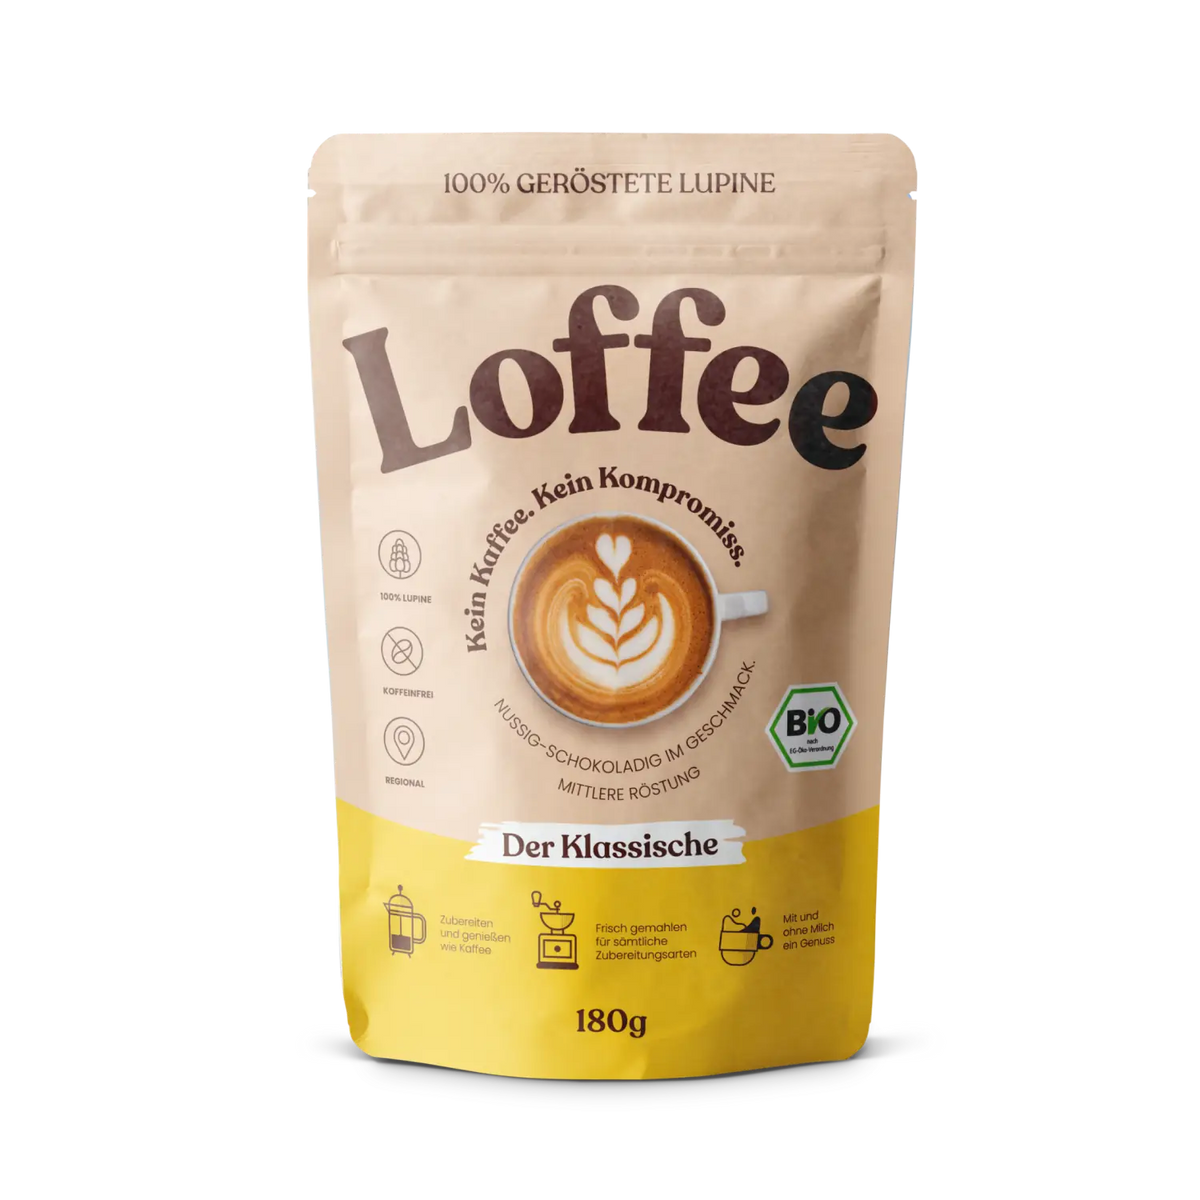 Organic lupin coffee - "The classic" Loffee